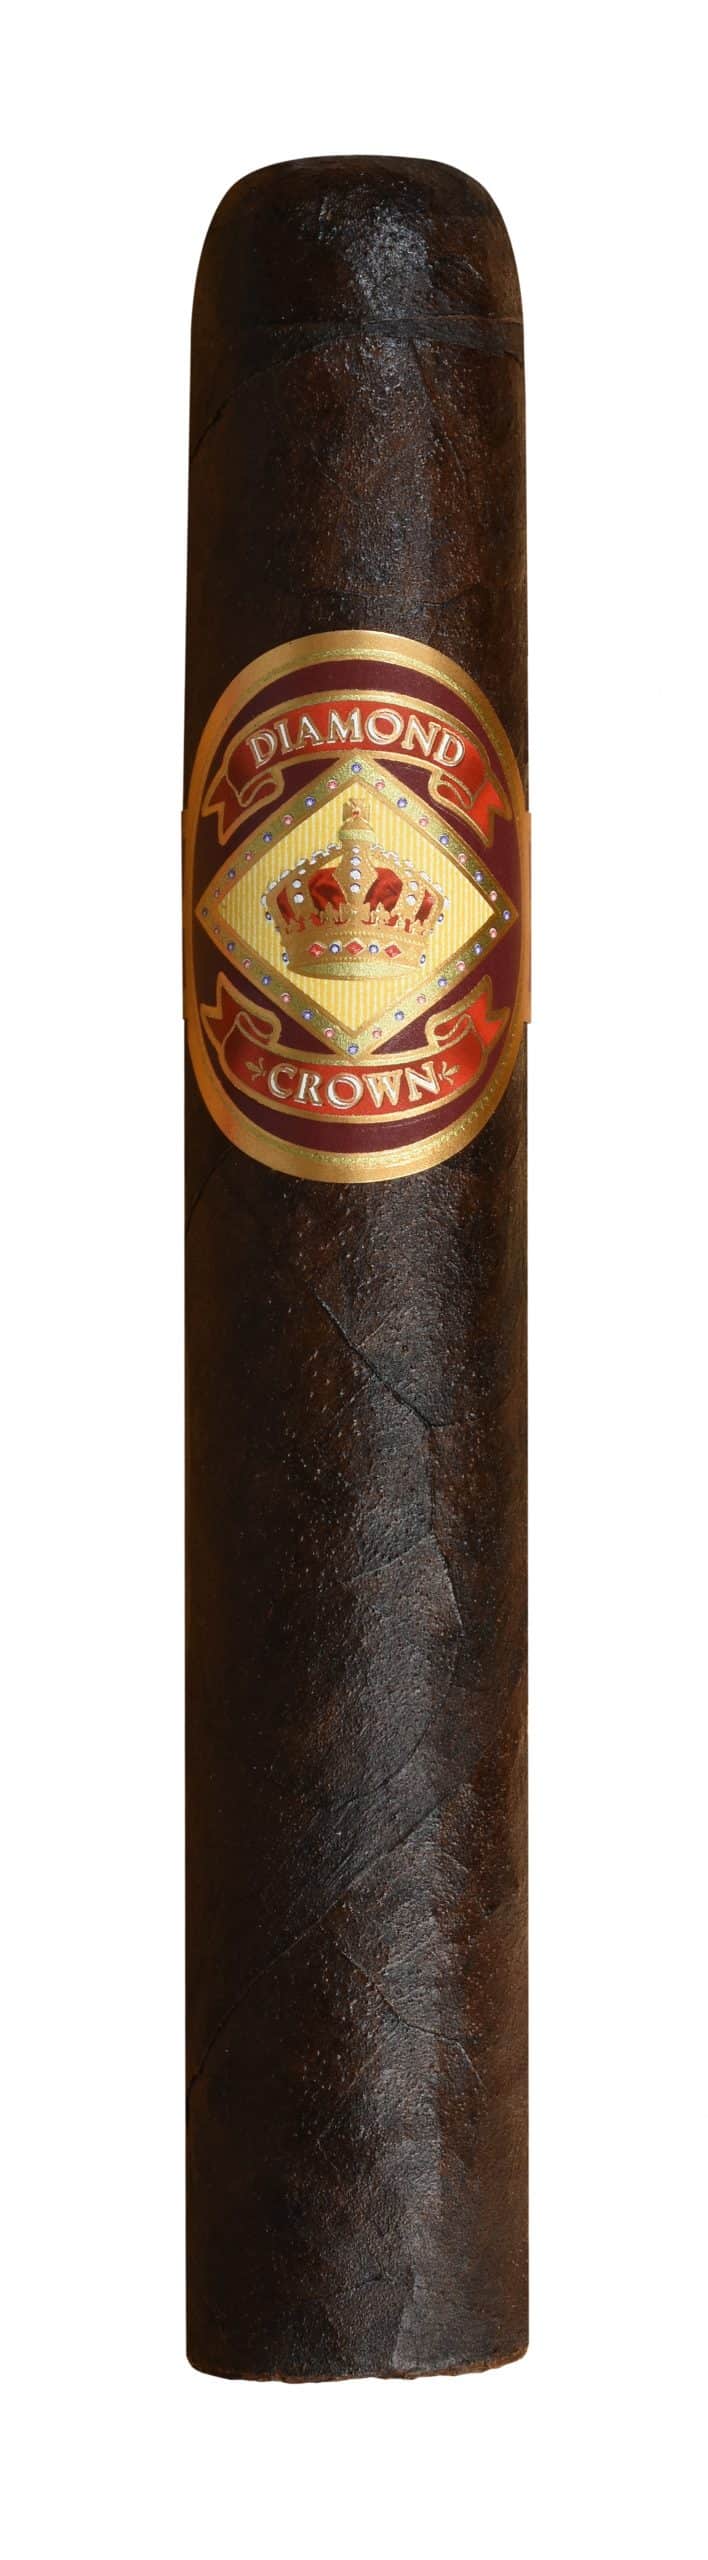 diamond crown maduro number 4 single cigar